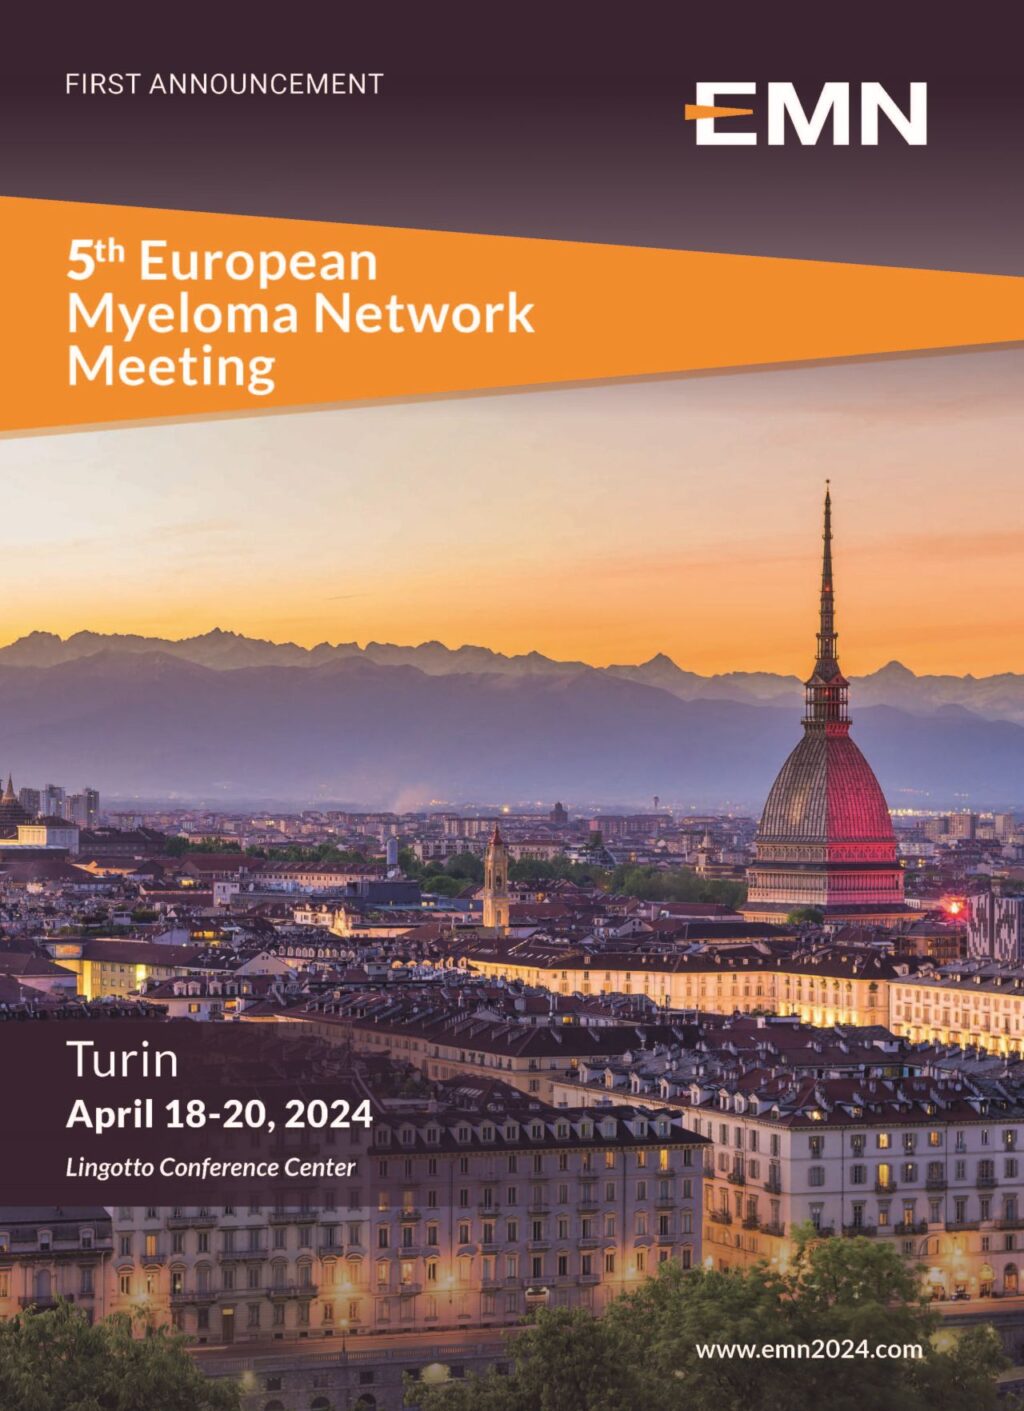 EMN2024: Dal 18 al 20 aprile 2024 a Torino il Convegno Internazionale sul Mieloma Multiplo